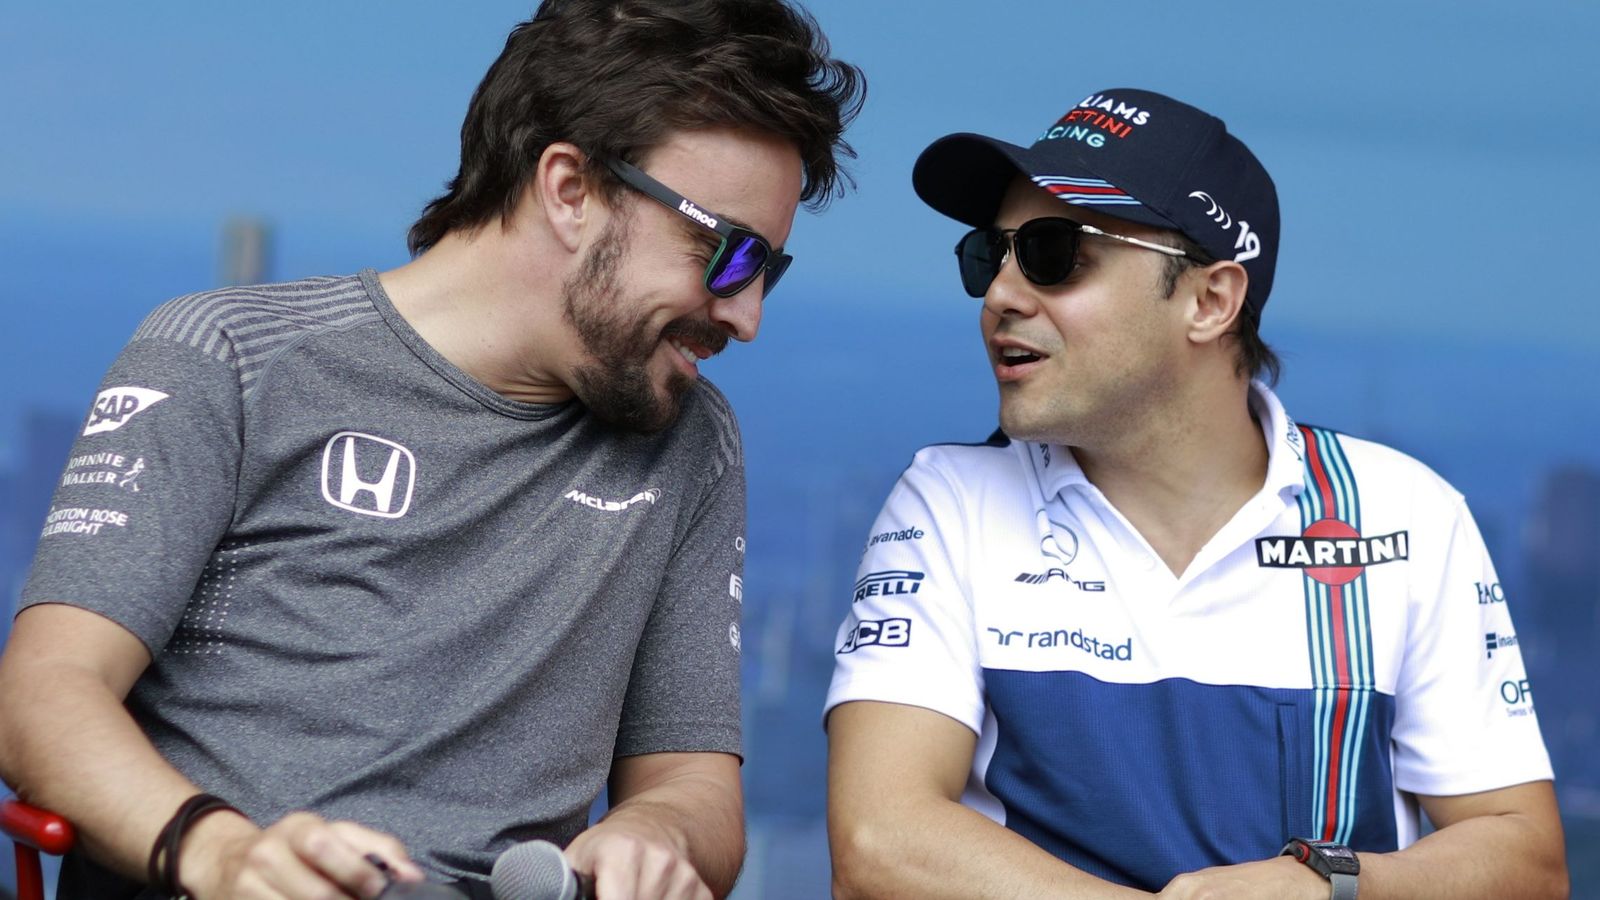 Foto: Alonso y Massa charlan amigablemente en el GP de Australia de este año (EFE)